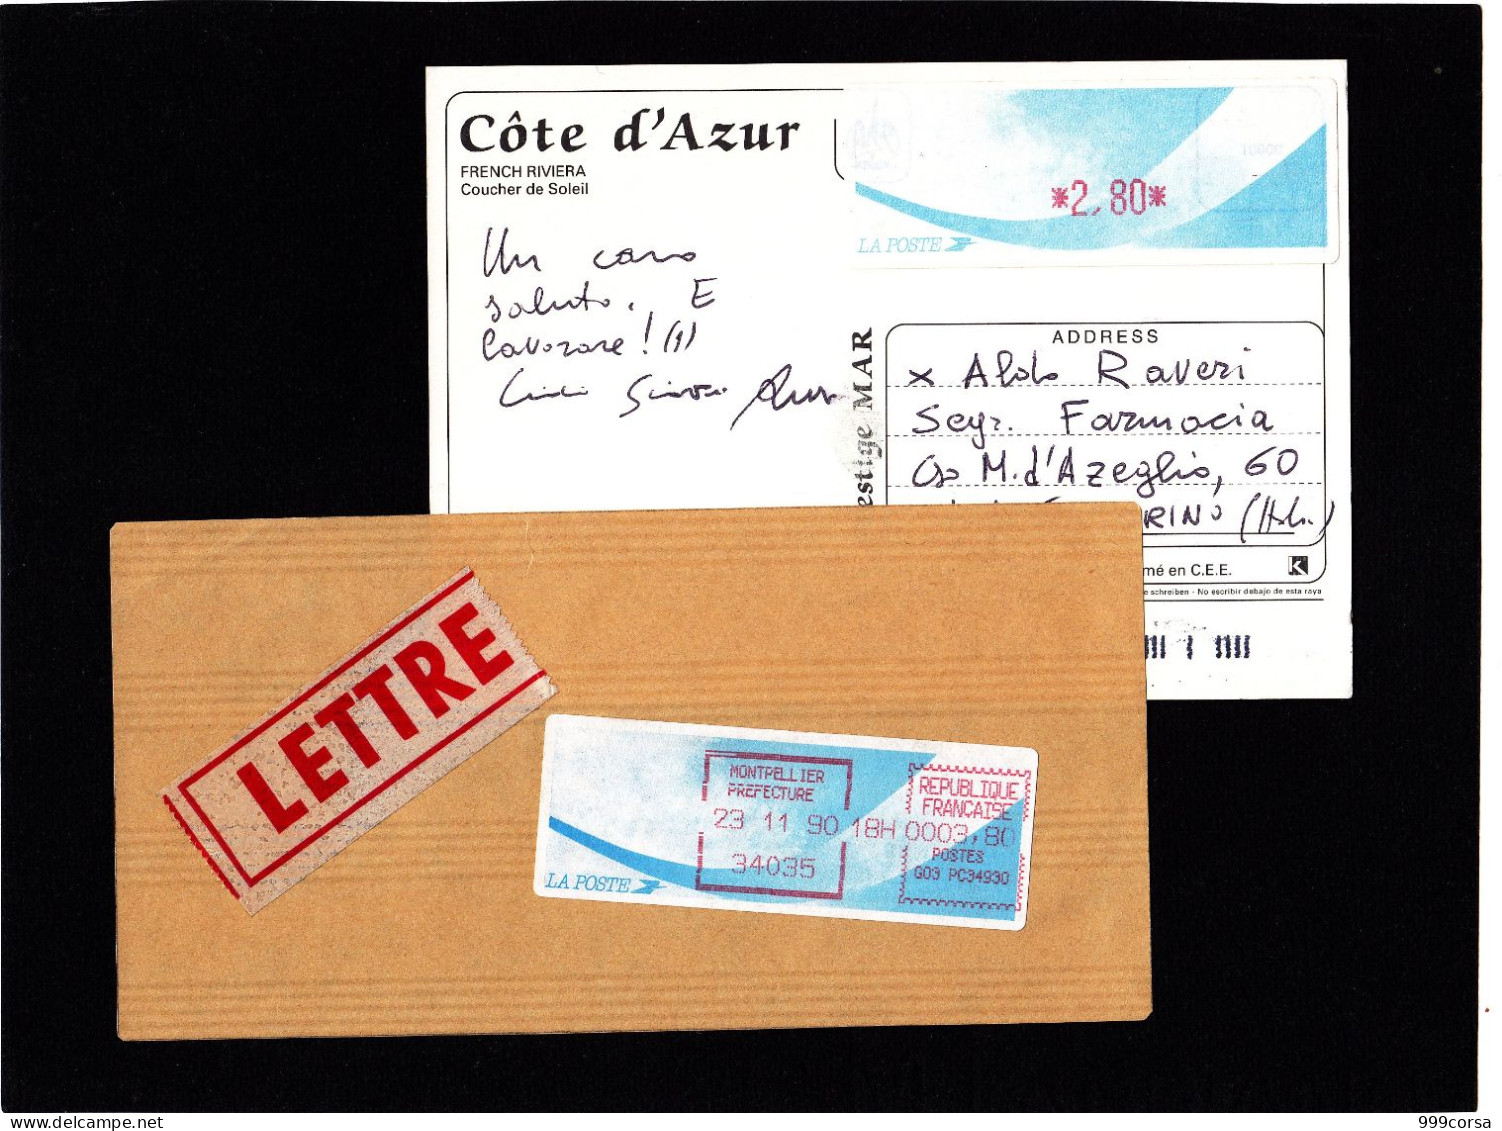 Francia, Vignette "Comete", 2,80 Fr., "Oiseaux De Jubert", 3,00 Fr. 0,46 Eur., "Avion En Papier", AA 1,35 Eur (3scan) - 1988 Type « Comète »